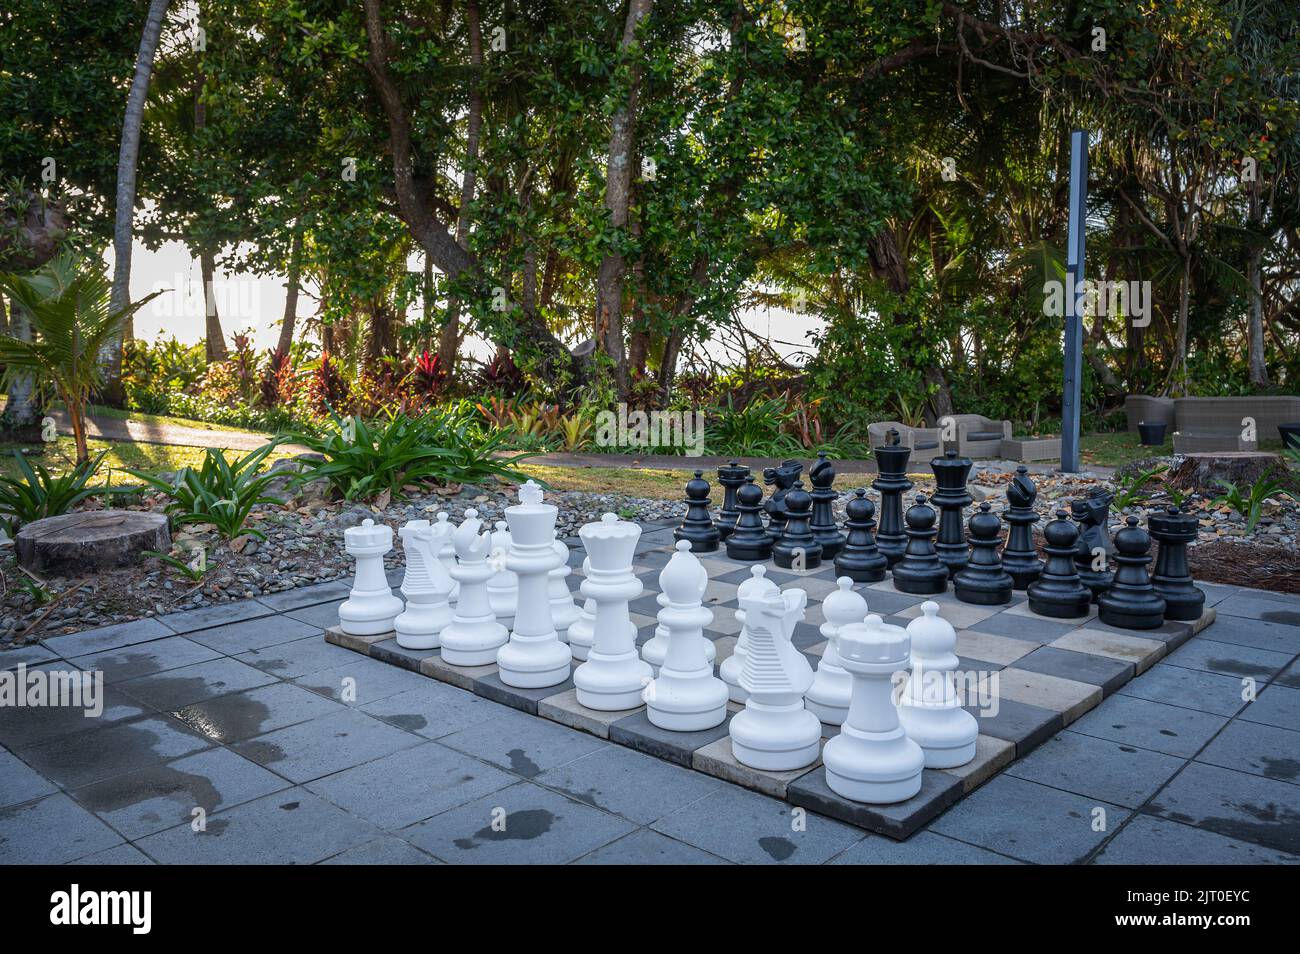 Une retraite dans un jardin tropical magnifiquement organisé, avec un jeu d'échecs géant, des meubles de jardin sur une plage de 4 kilomètres de Port Douglas, Queensland, Australie. Banque D'Images